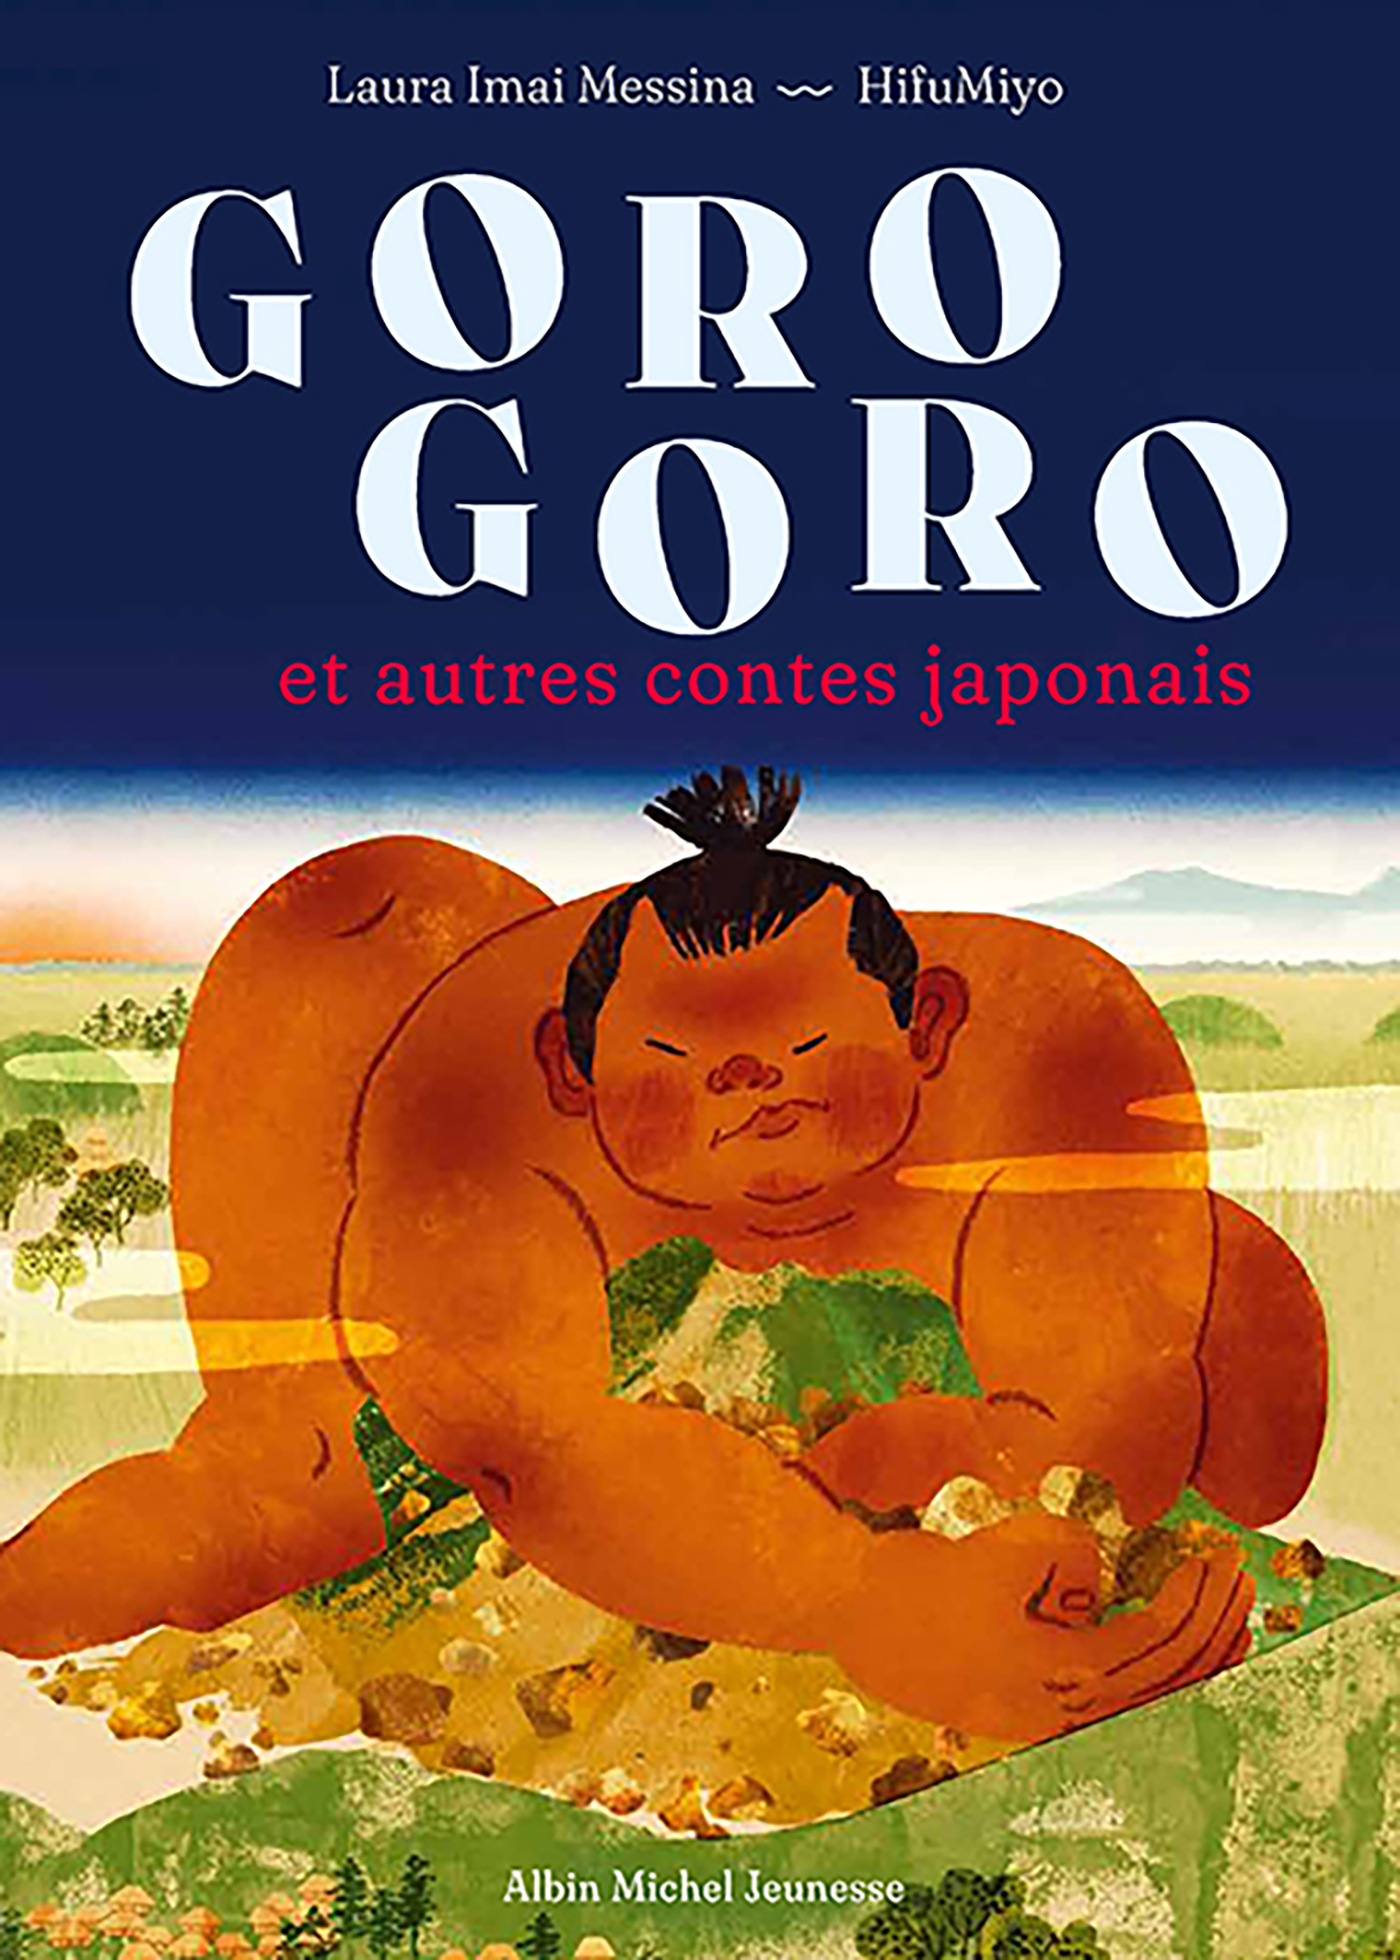 Couverture du livre Goro Goro et autres contes japonais